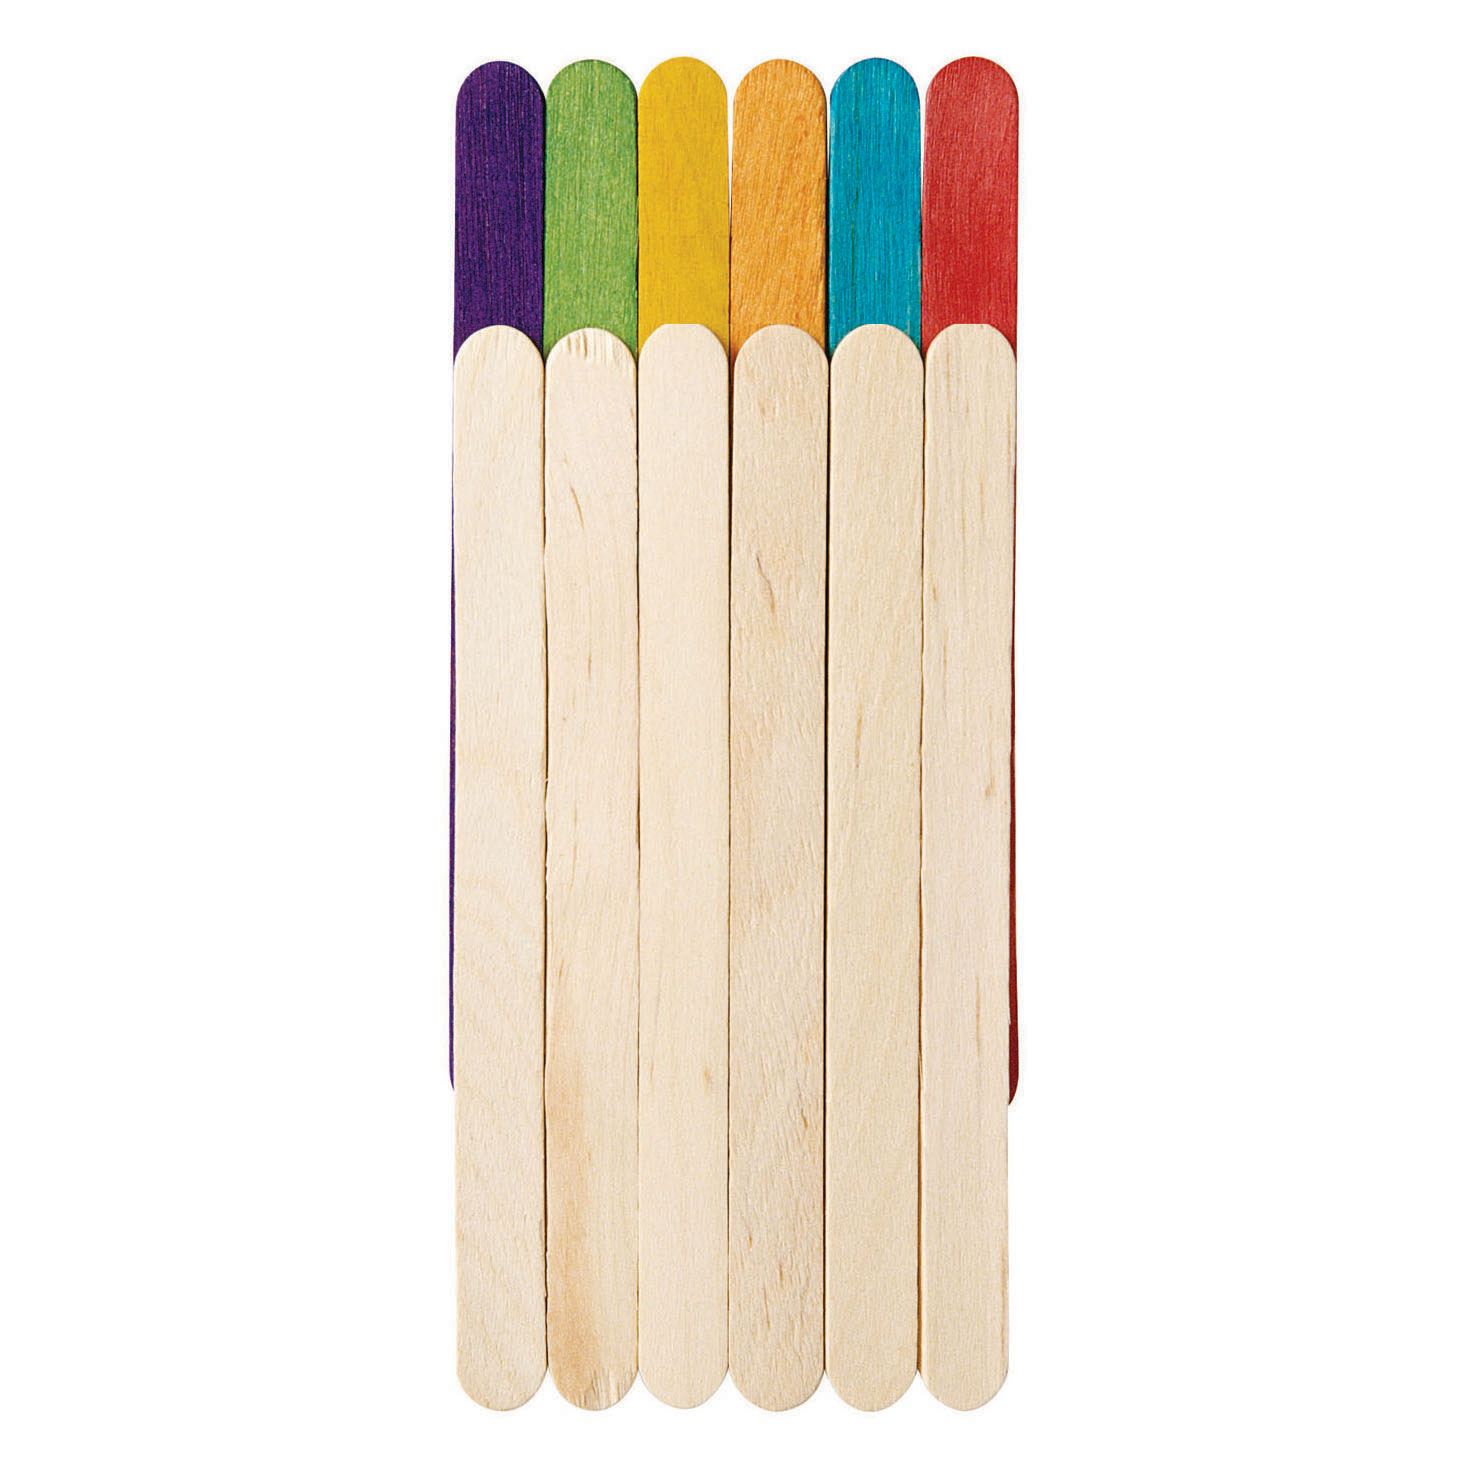 Colorations - Bâtonnets en bois colorés, 1000pcs.